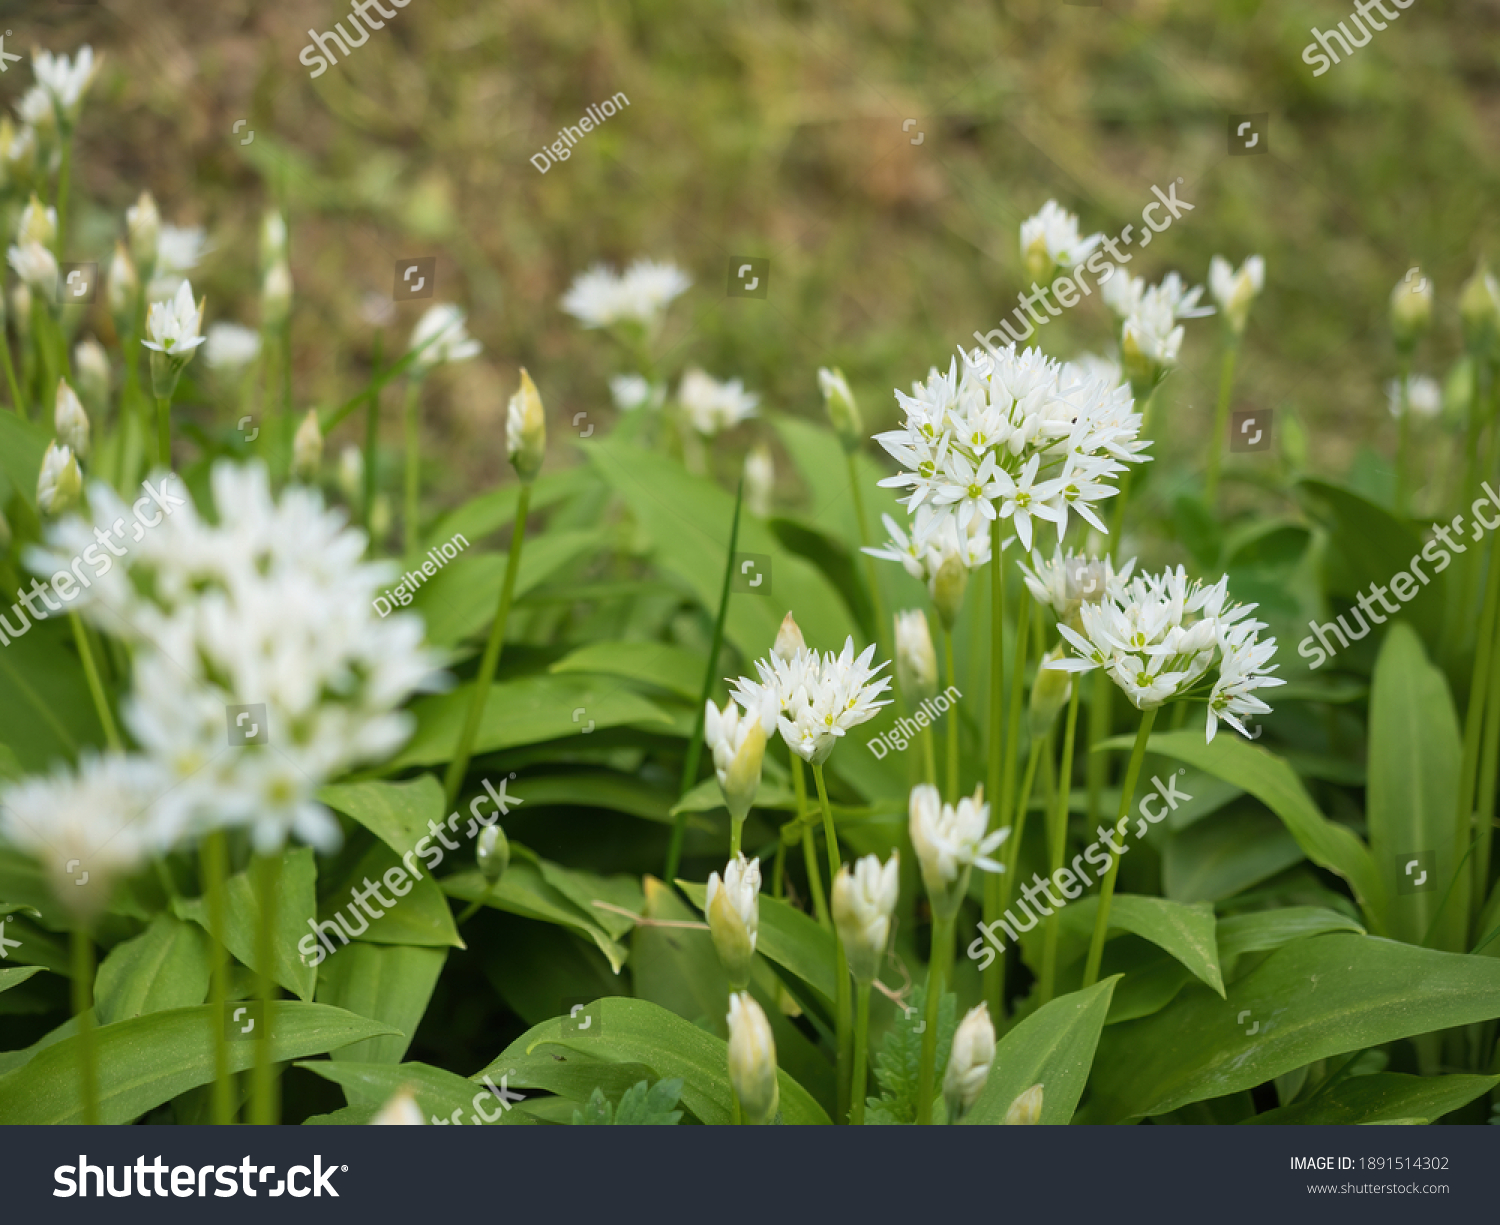 Wild garlic Images, Stock Photos & Vectors   Shutterstock